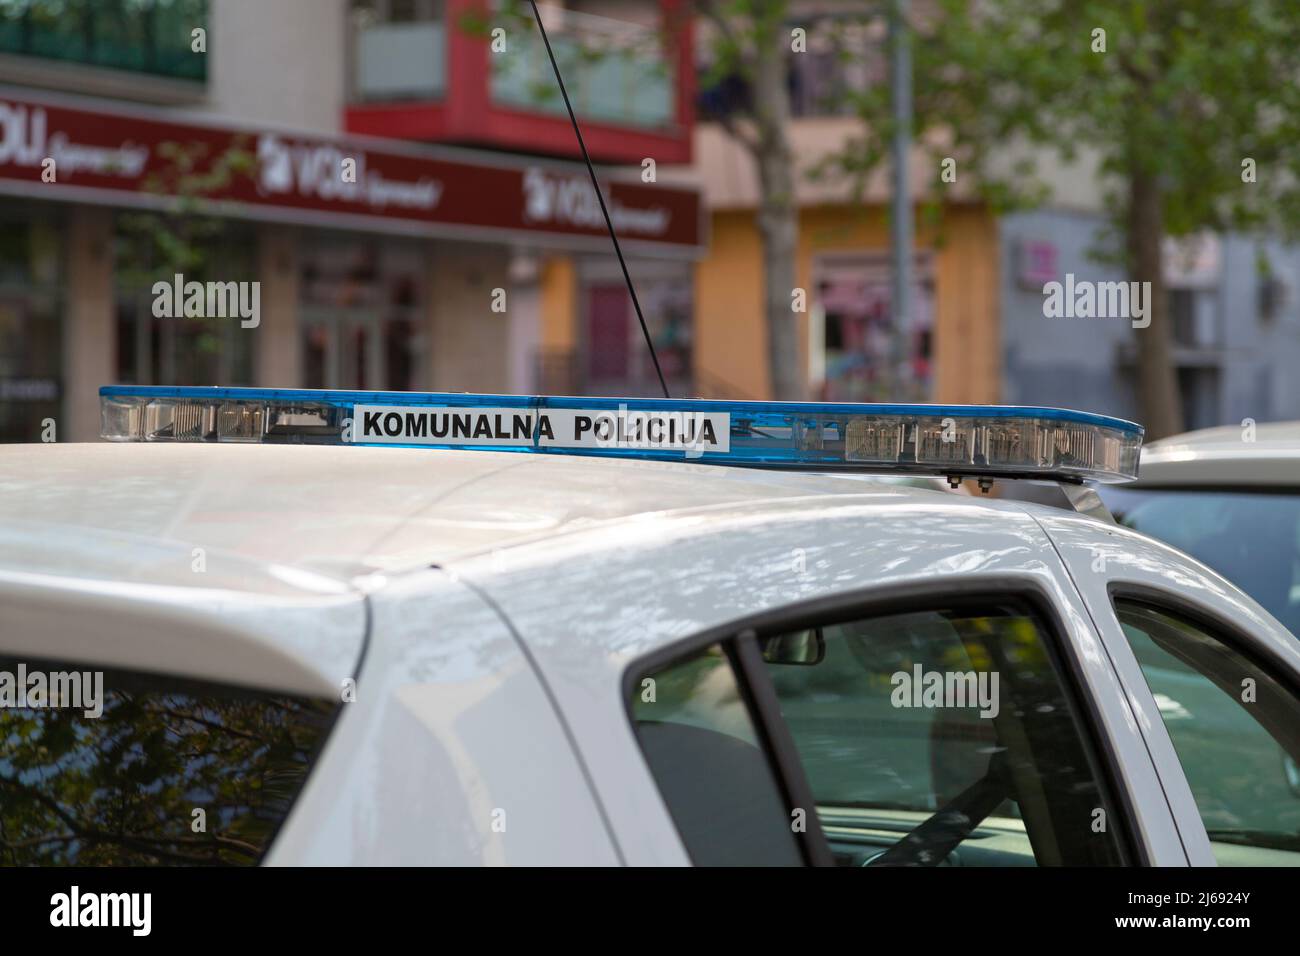 Sirène d'une voiture de la police municipale (Komunalna policija) de Podgorica garée à l'extérieur du poste de police. Banque D'Images